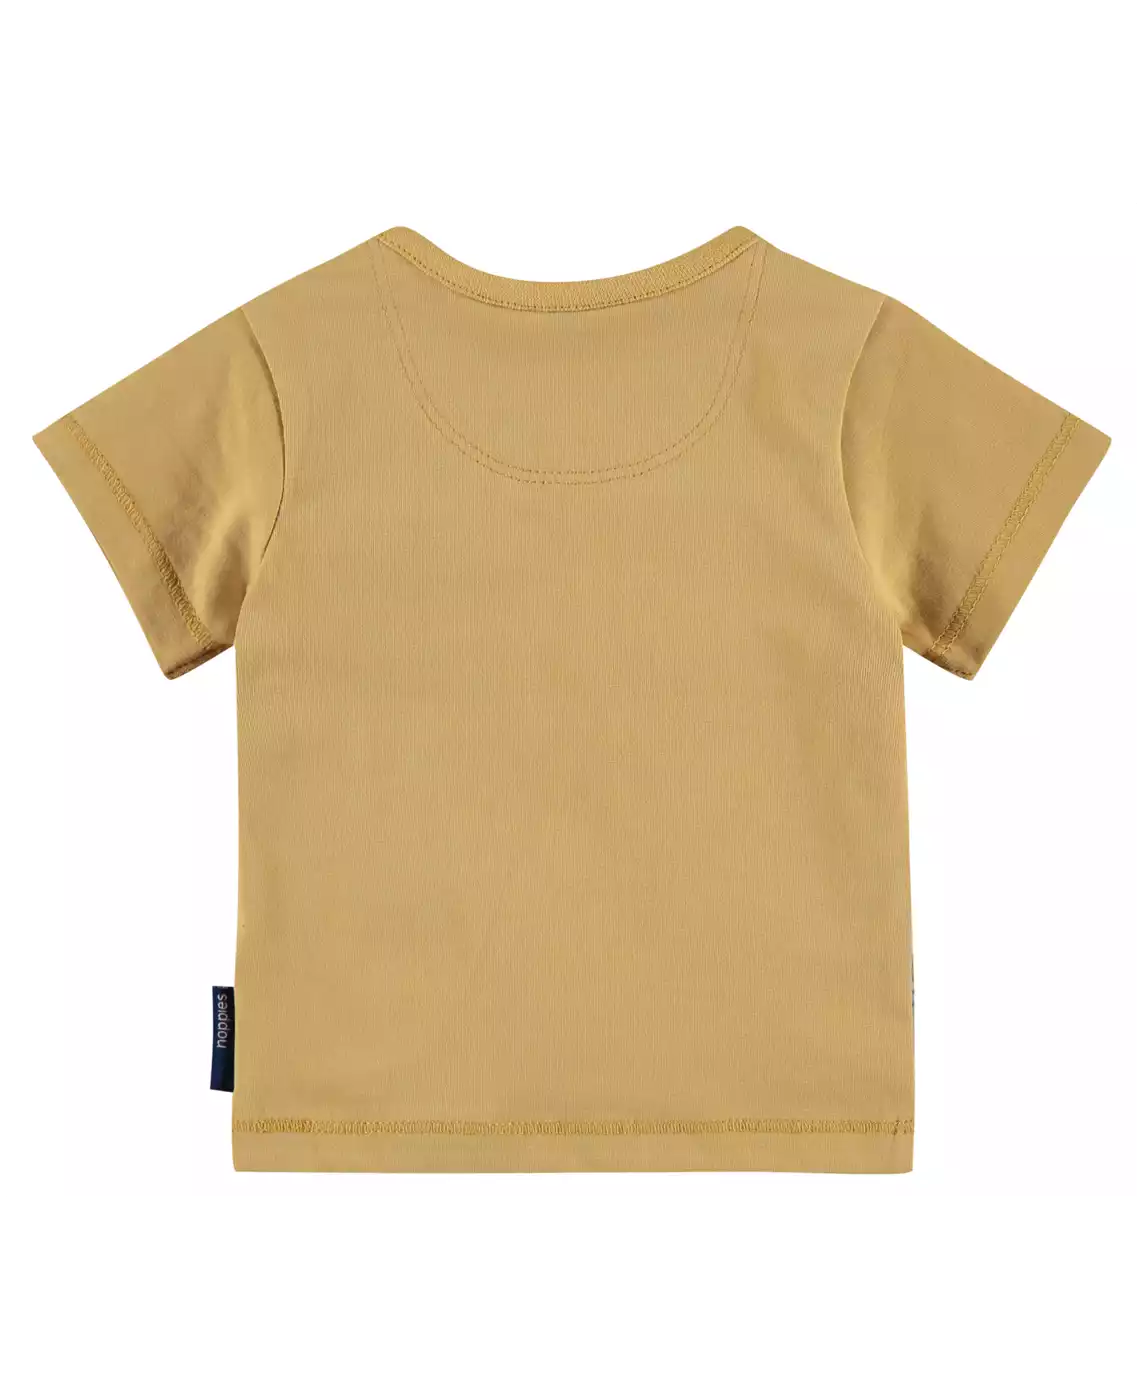 T-Shirt Lathrop noppies Schwarz Weiß Gelb M2006572468802 4